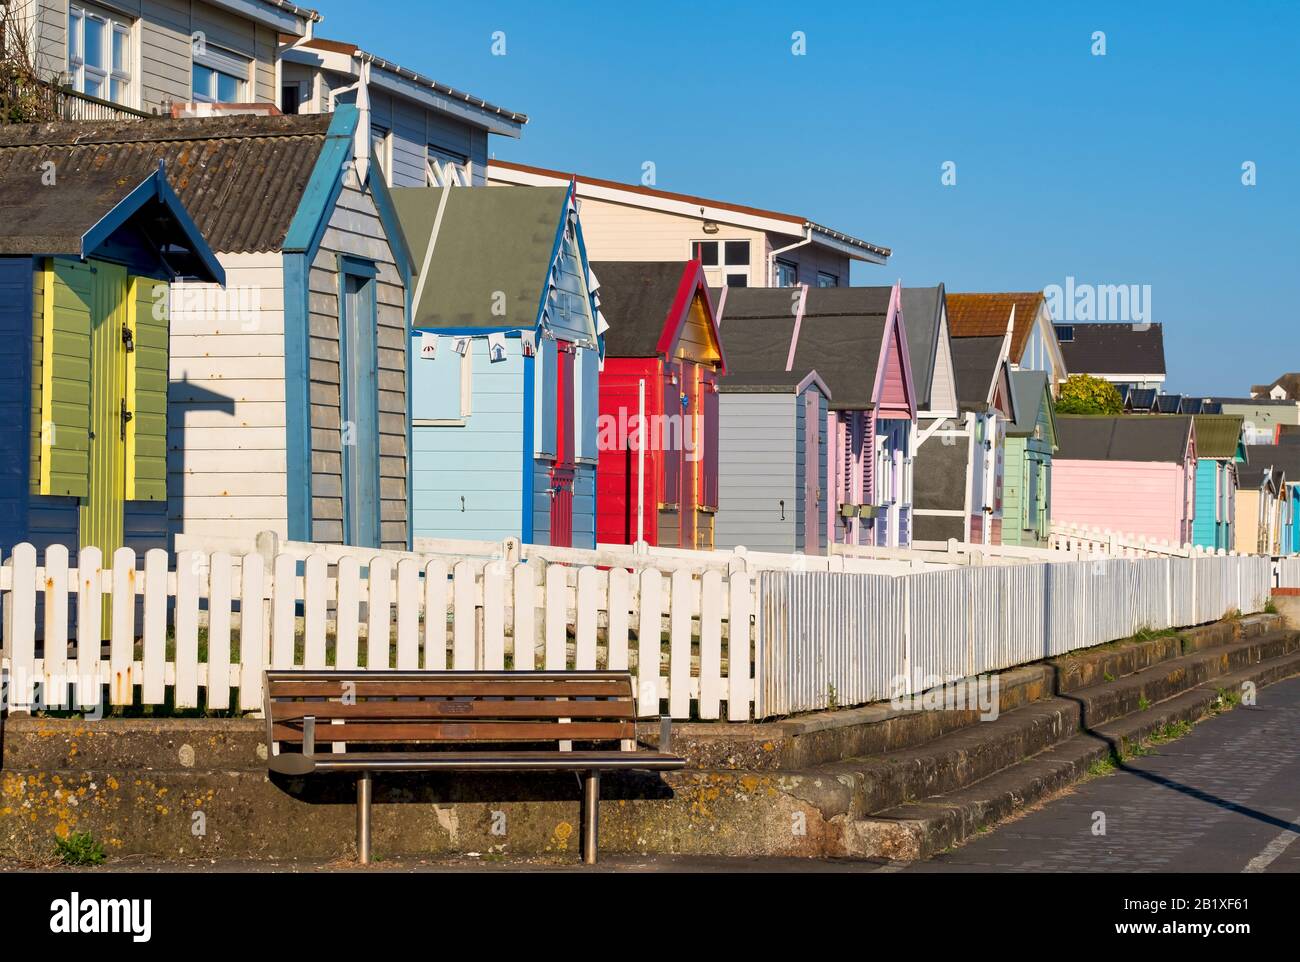 Bunte, hölzerne Strandhütten am Meer in Westward Ho! Lifestyle, Küstenleben, Urlaubsziel, Eimer und Spade Urlaub, North Devon Stockfoto